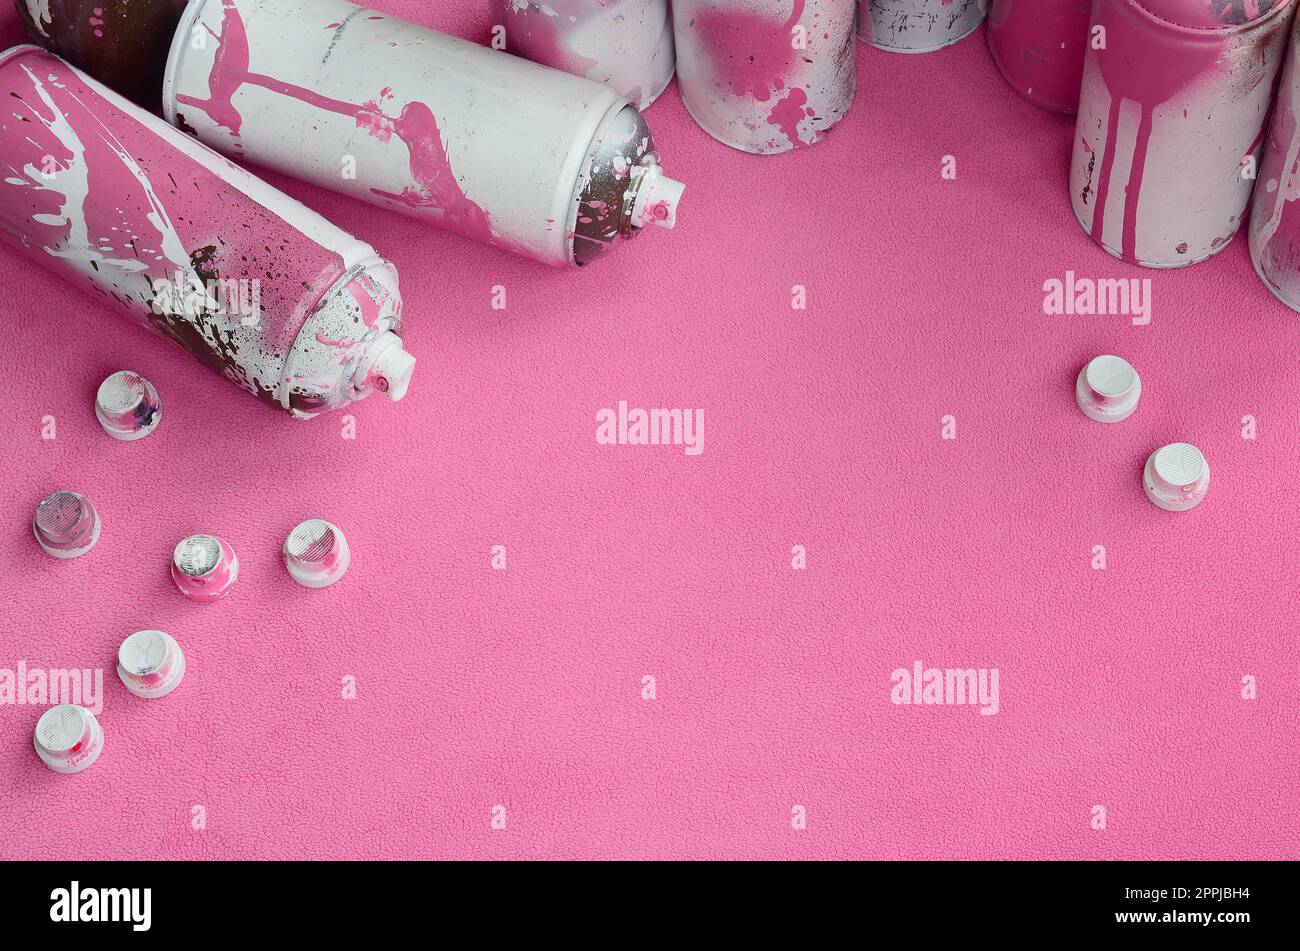 Certains aérosols roses usagés et des buses avec des gouttes de peinture reposent sur une couverture de tissu molletonné rose pâle doux et poilu. Couleur de conception féminine classique. Concept de hooliganisme graffiti Banque D'Images